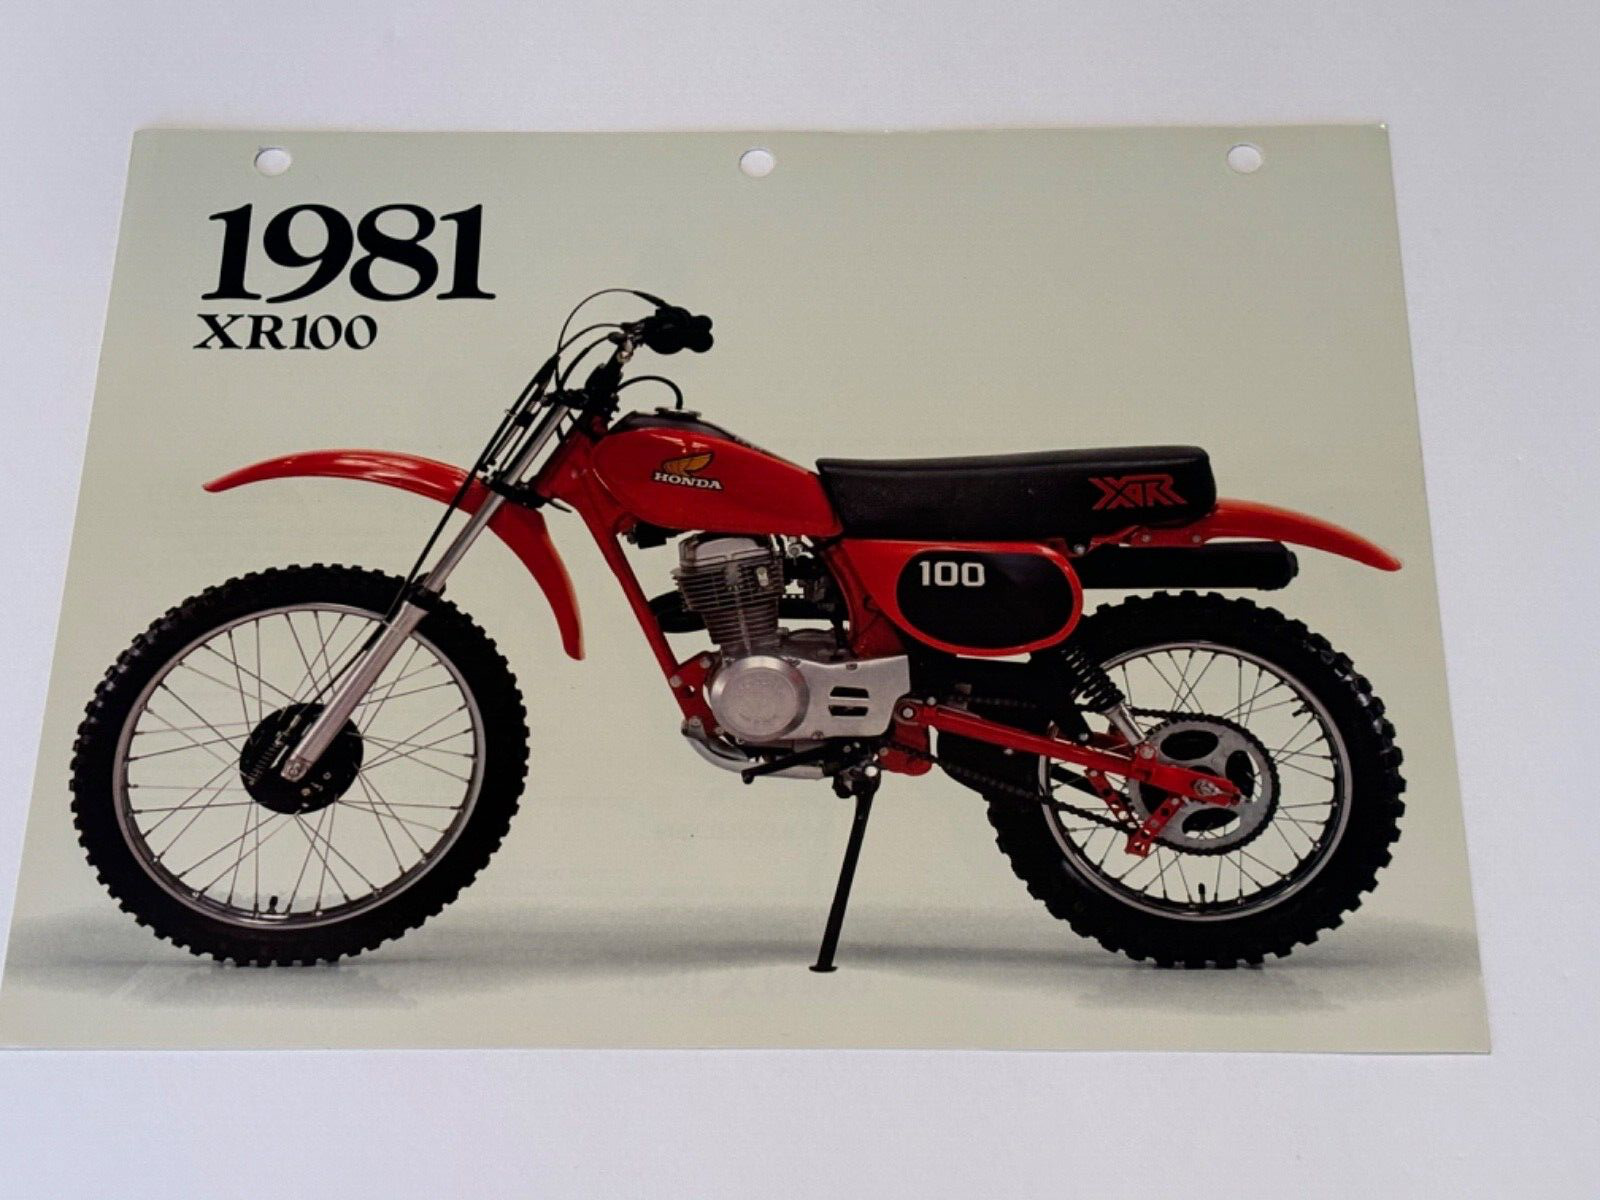 Original 1981 Honda XR100 Motorcycle Dealer Sales Brochure